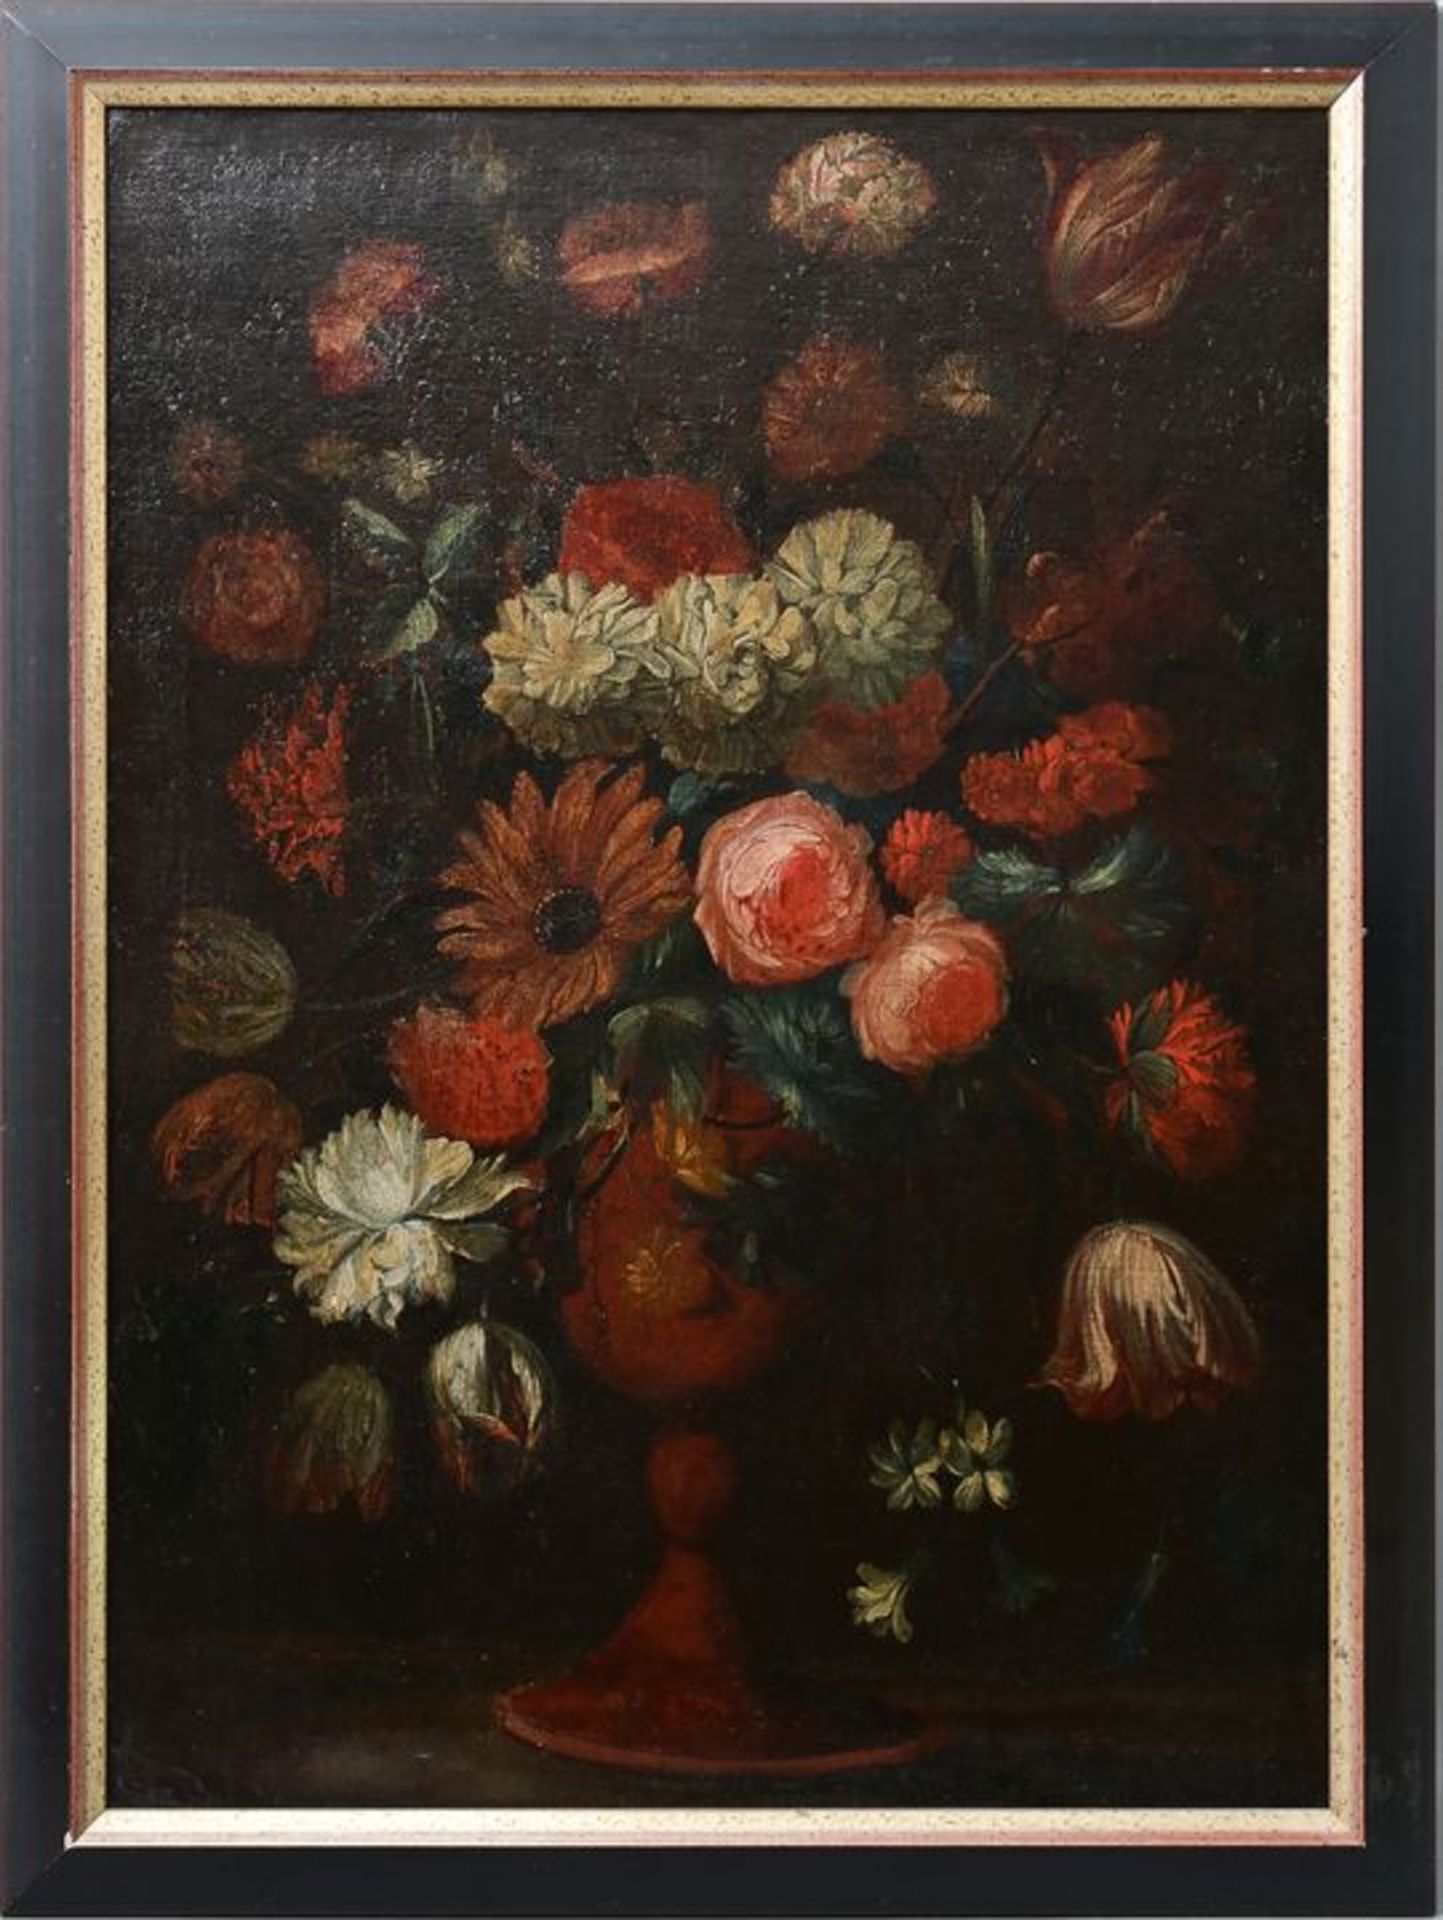 Blumenstillleben, 18. Jh. / Flower still life, 18th cent. - Bild 3 aus 3